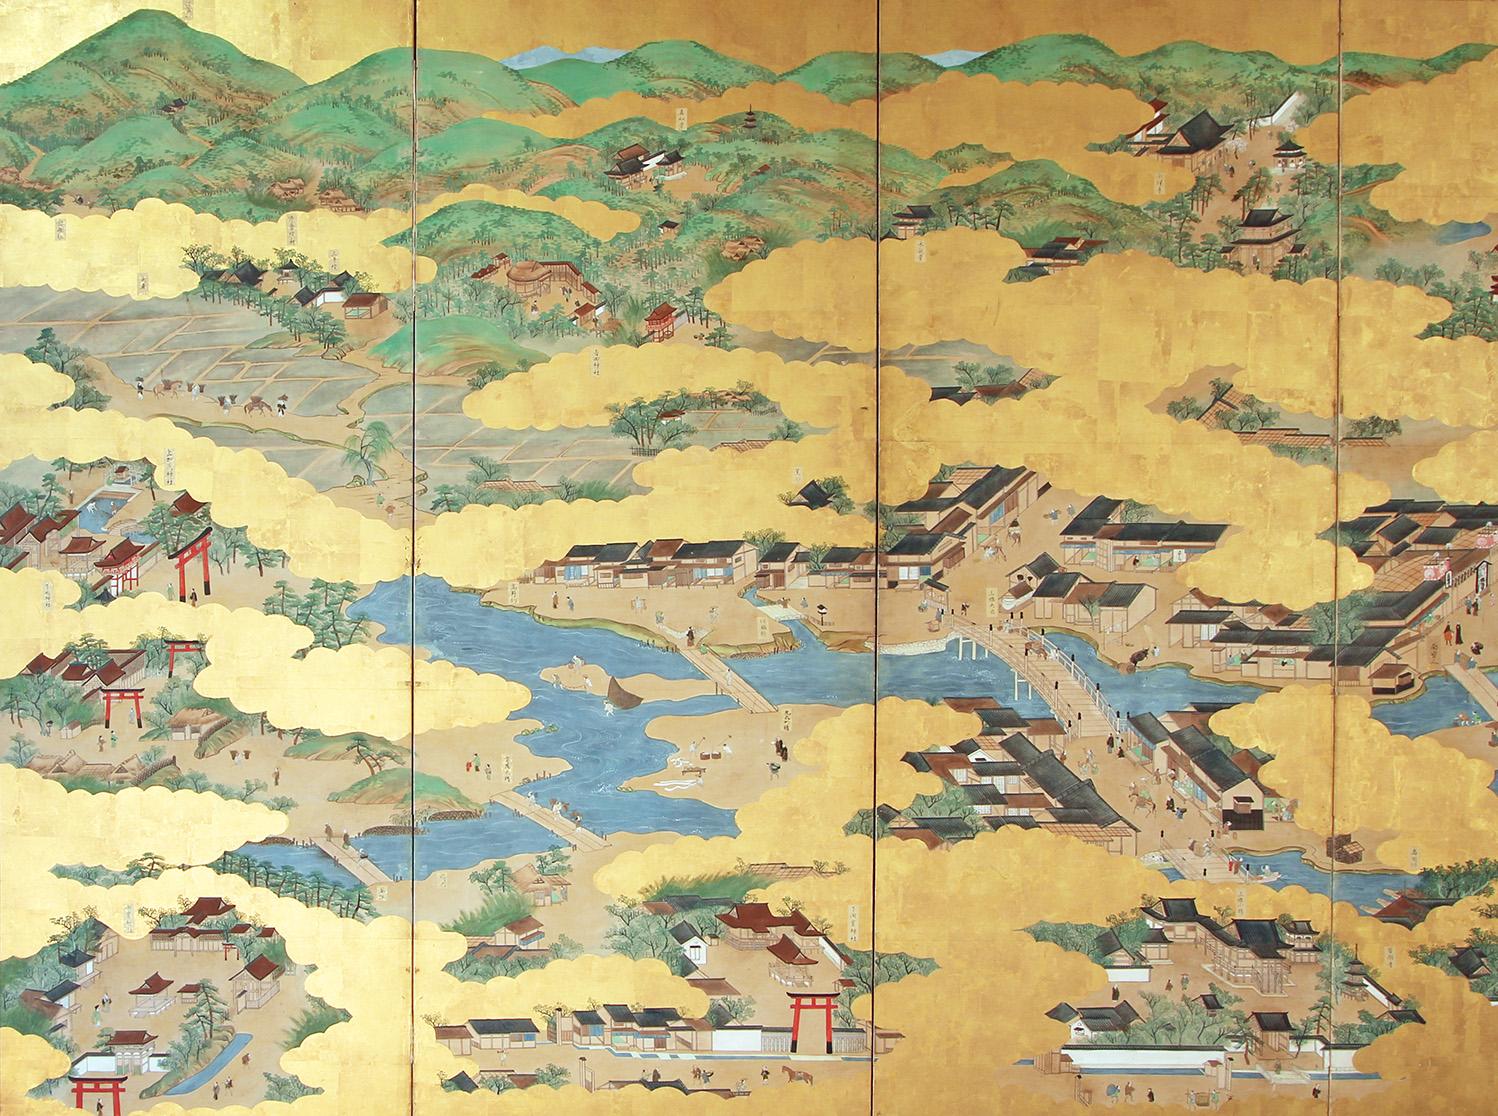 Del periodo Edo questo grande paravento giapponese che riproduce l'antica città di Kyoto e i suoi sobborghi.
Die 